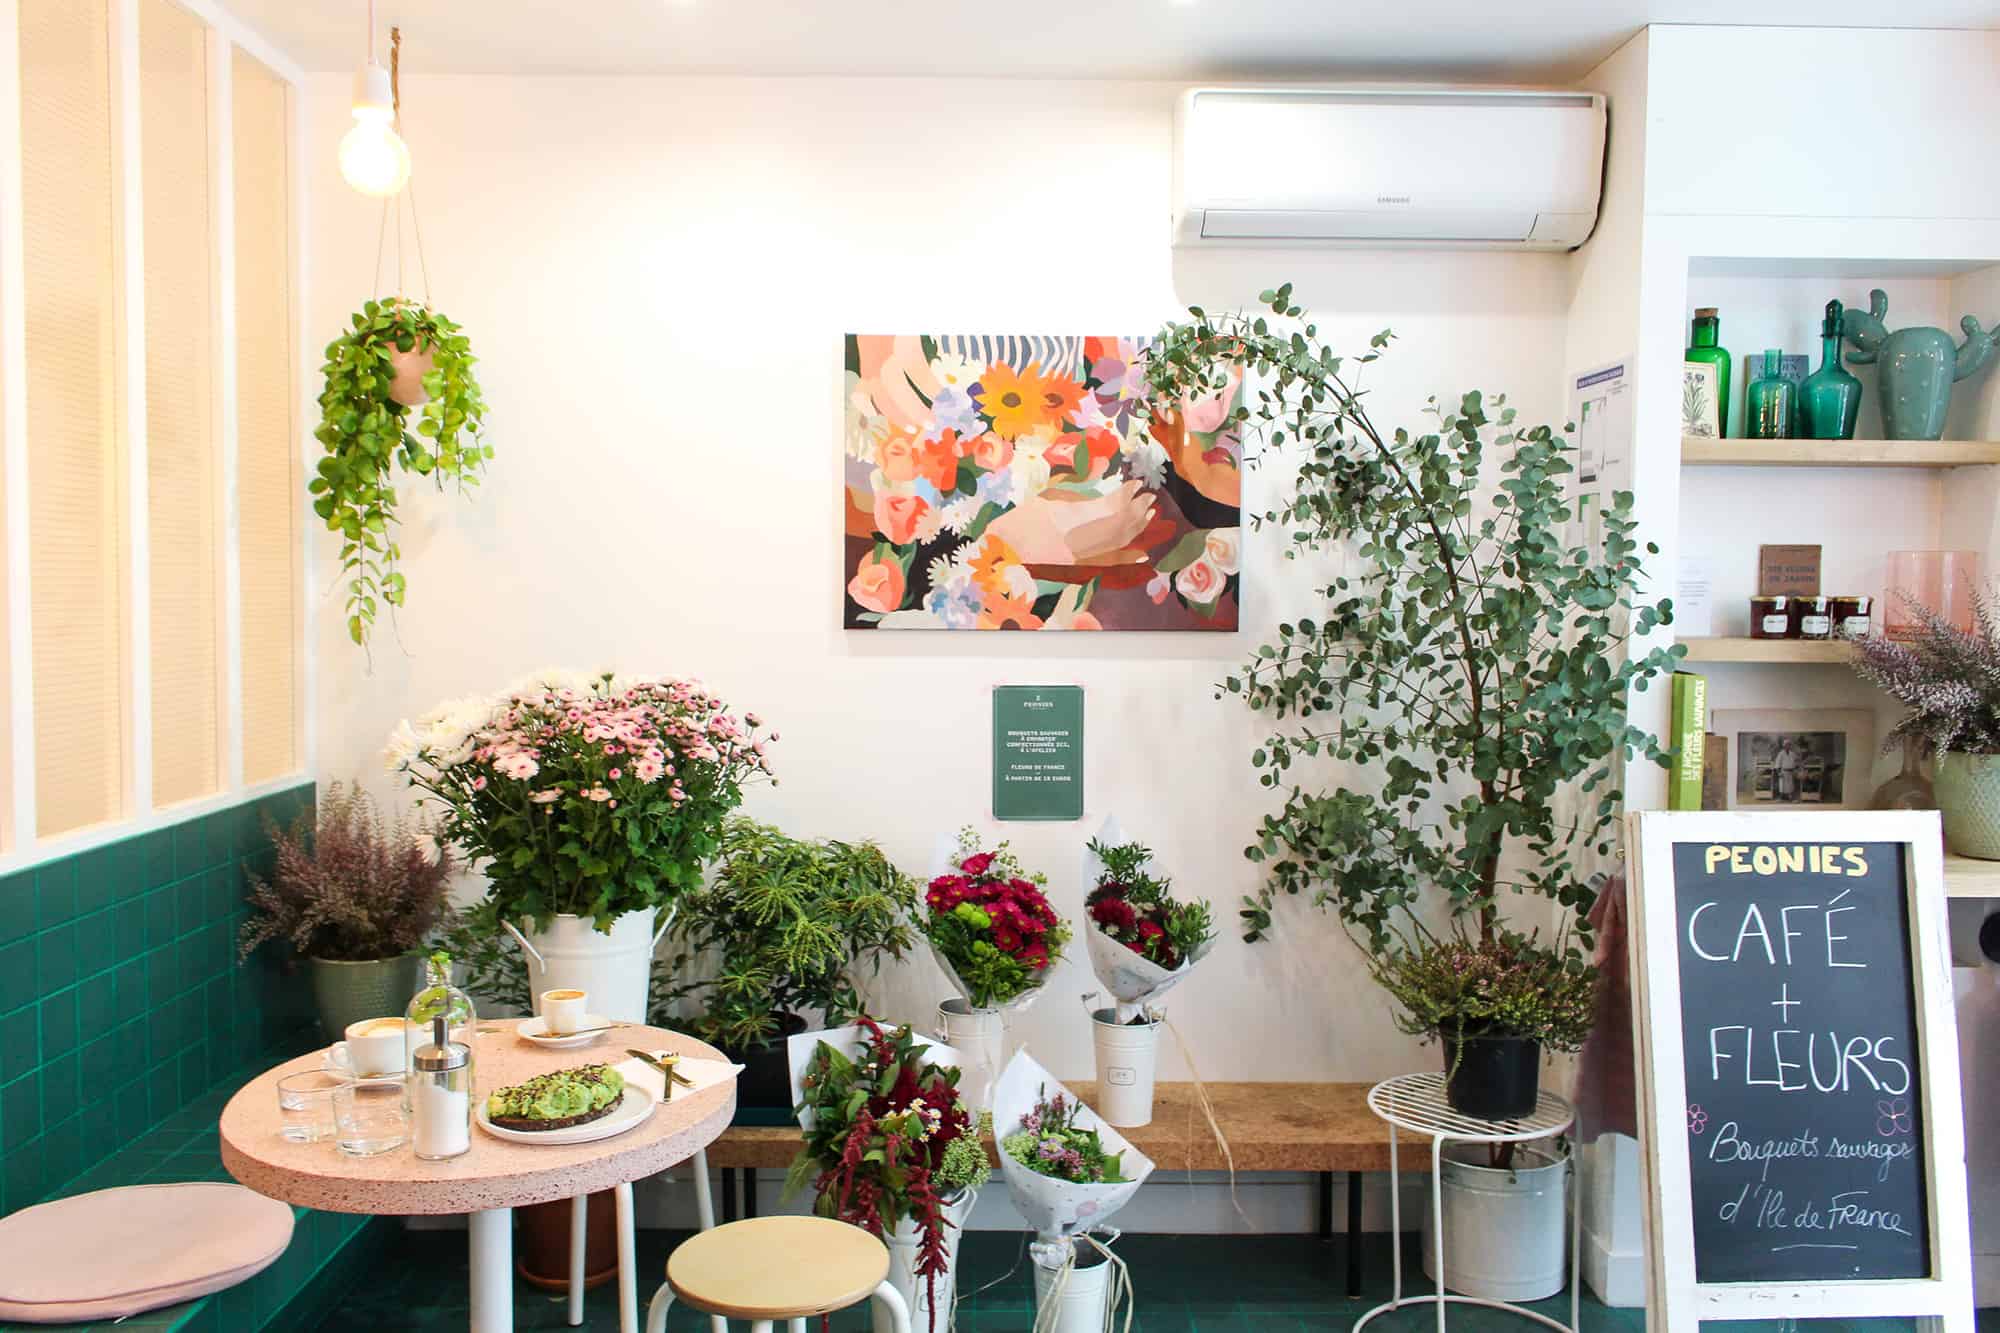 Peonies: Café et Fleurs on rue du Faubourg Saint-Denis